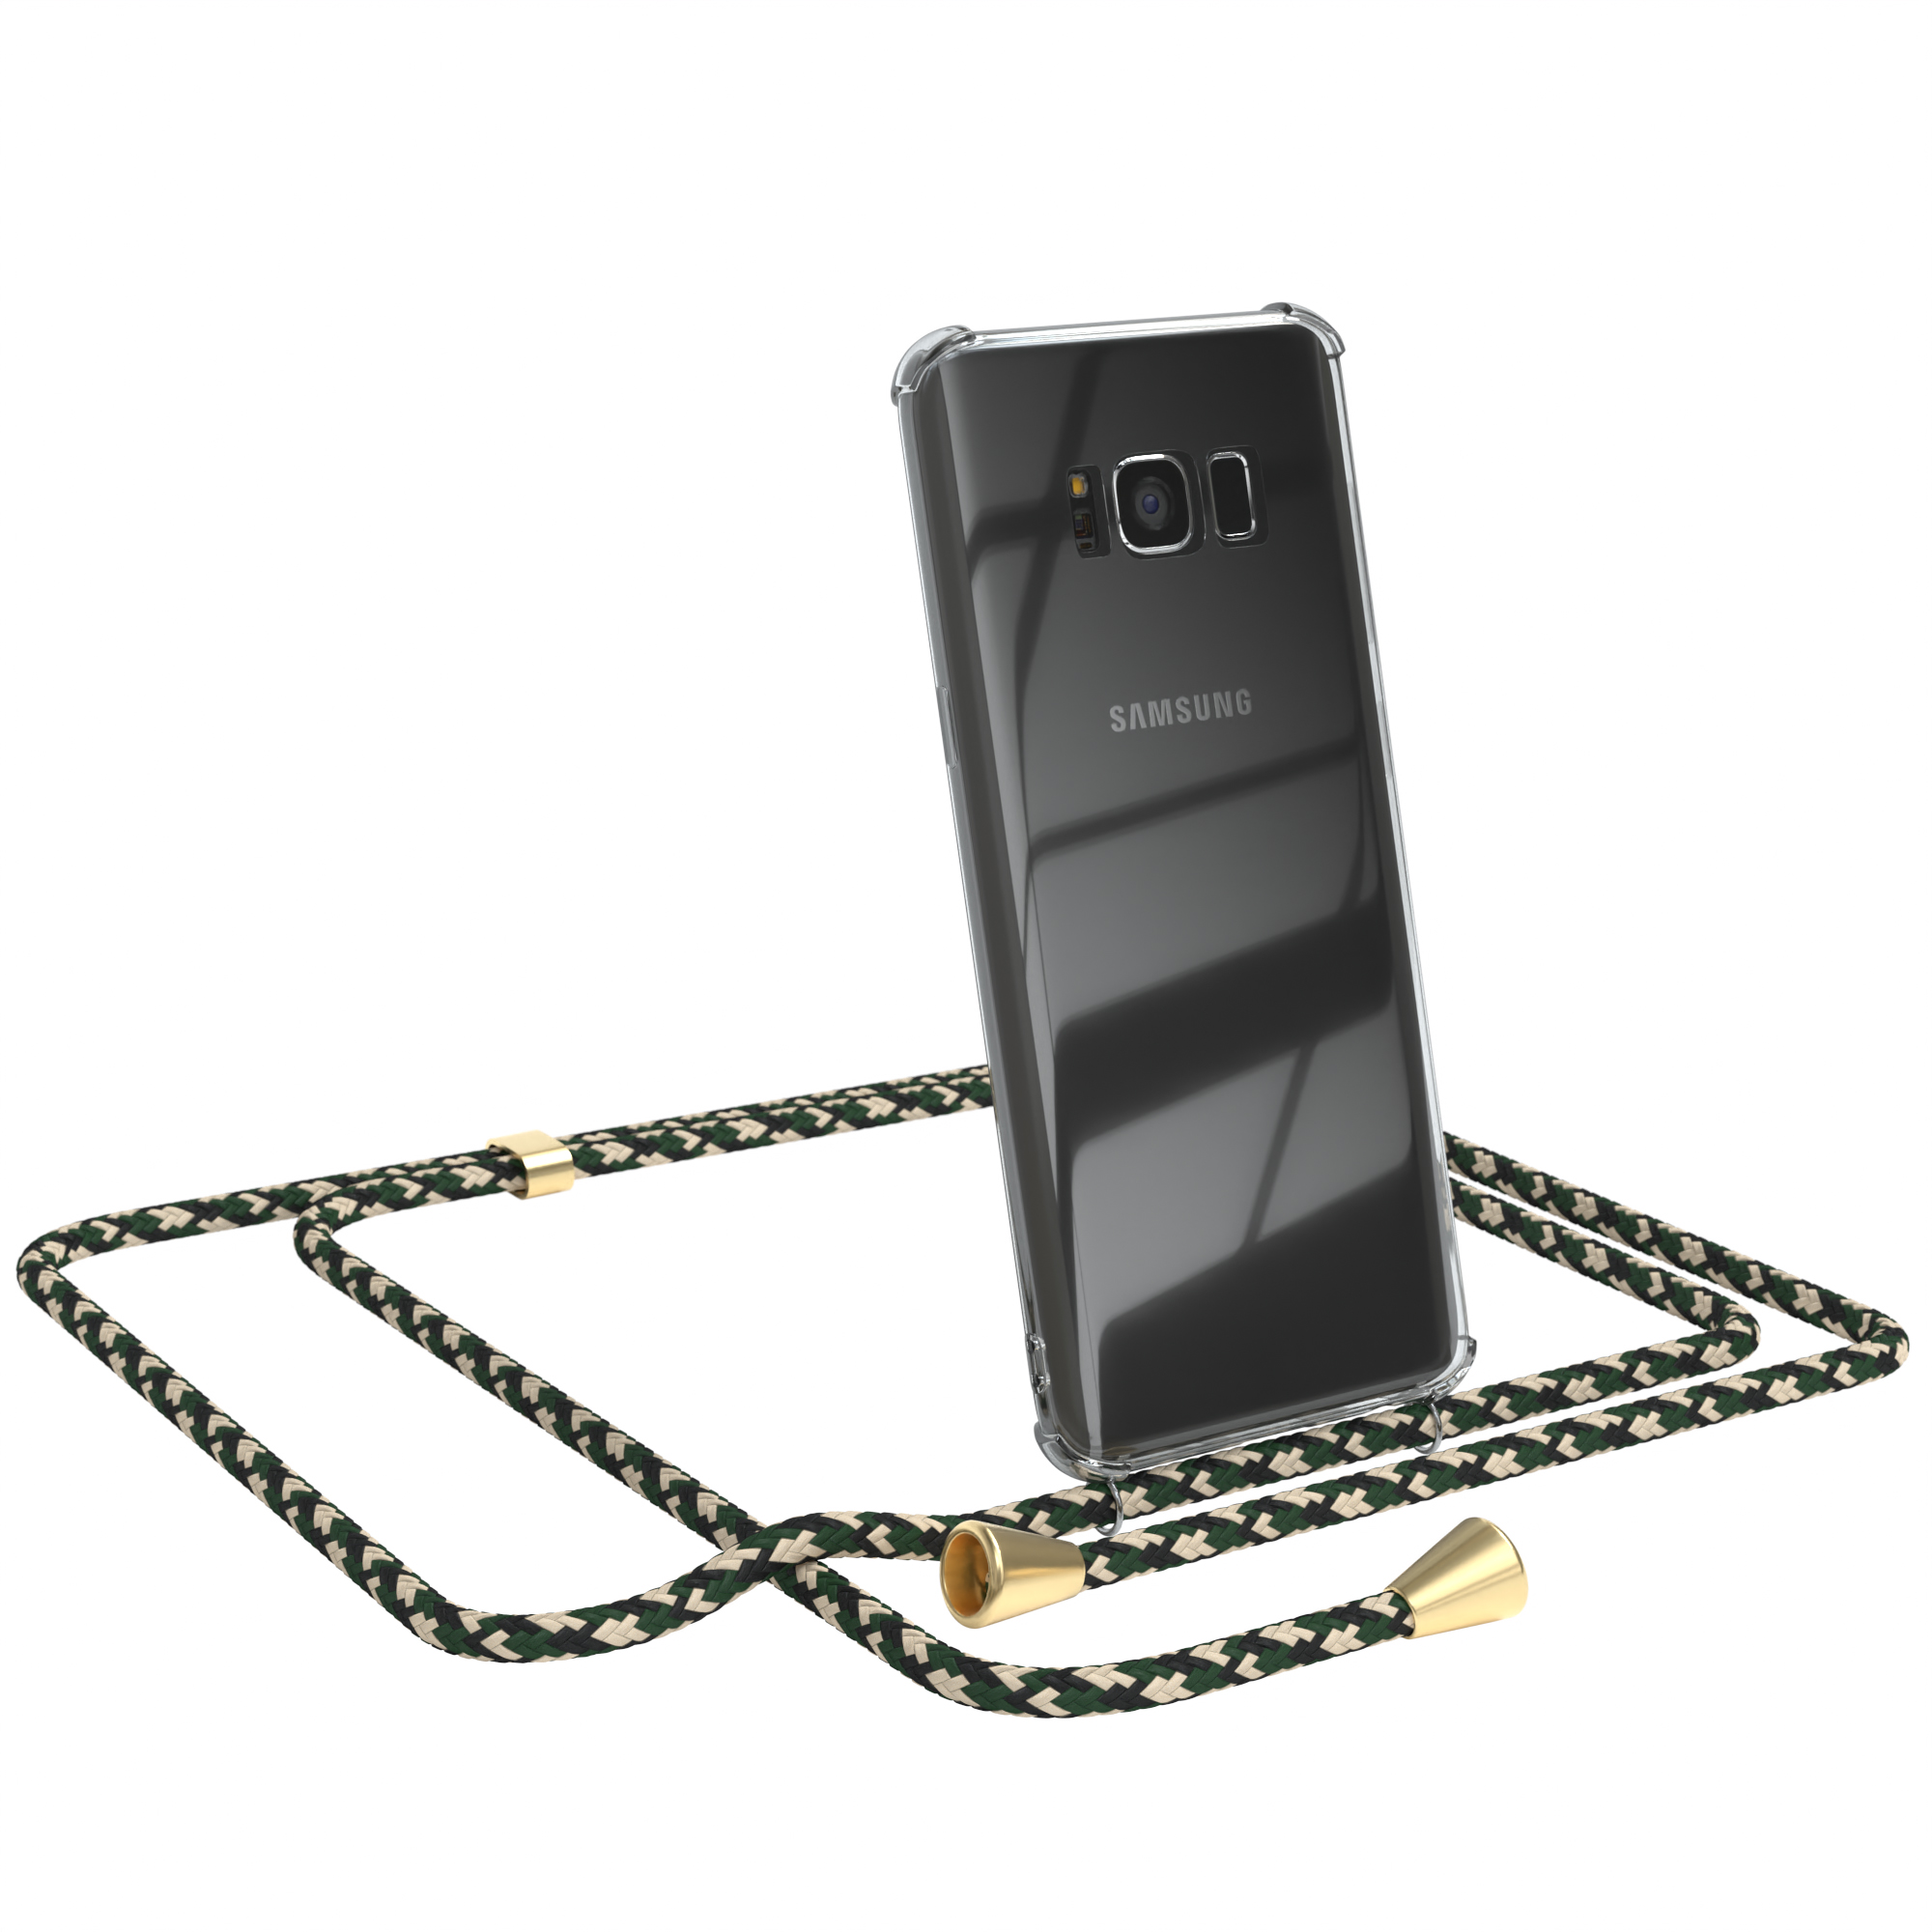 Umhängeband, Clips Galaxy Clear mit S8, Gold Cover Camouflage Umhängetasche, Grün CASE / Samsung, EAZY